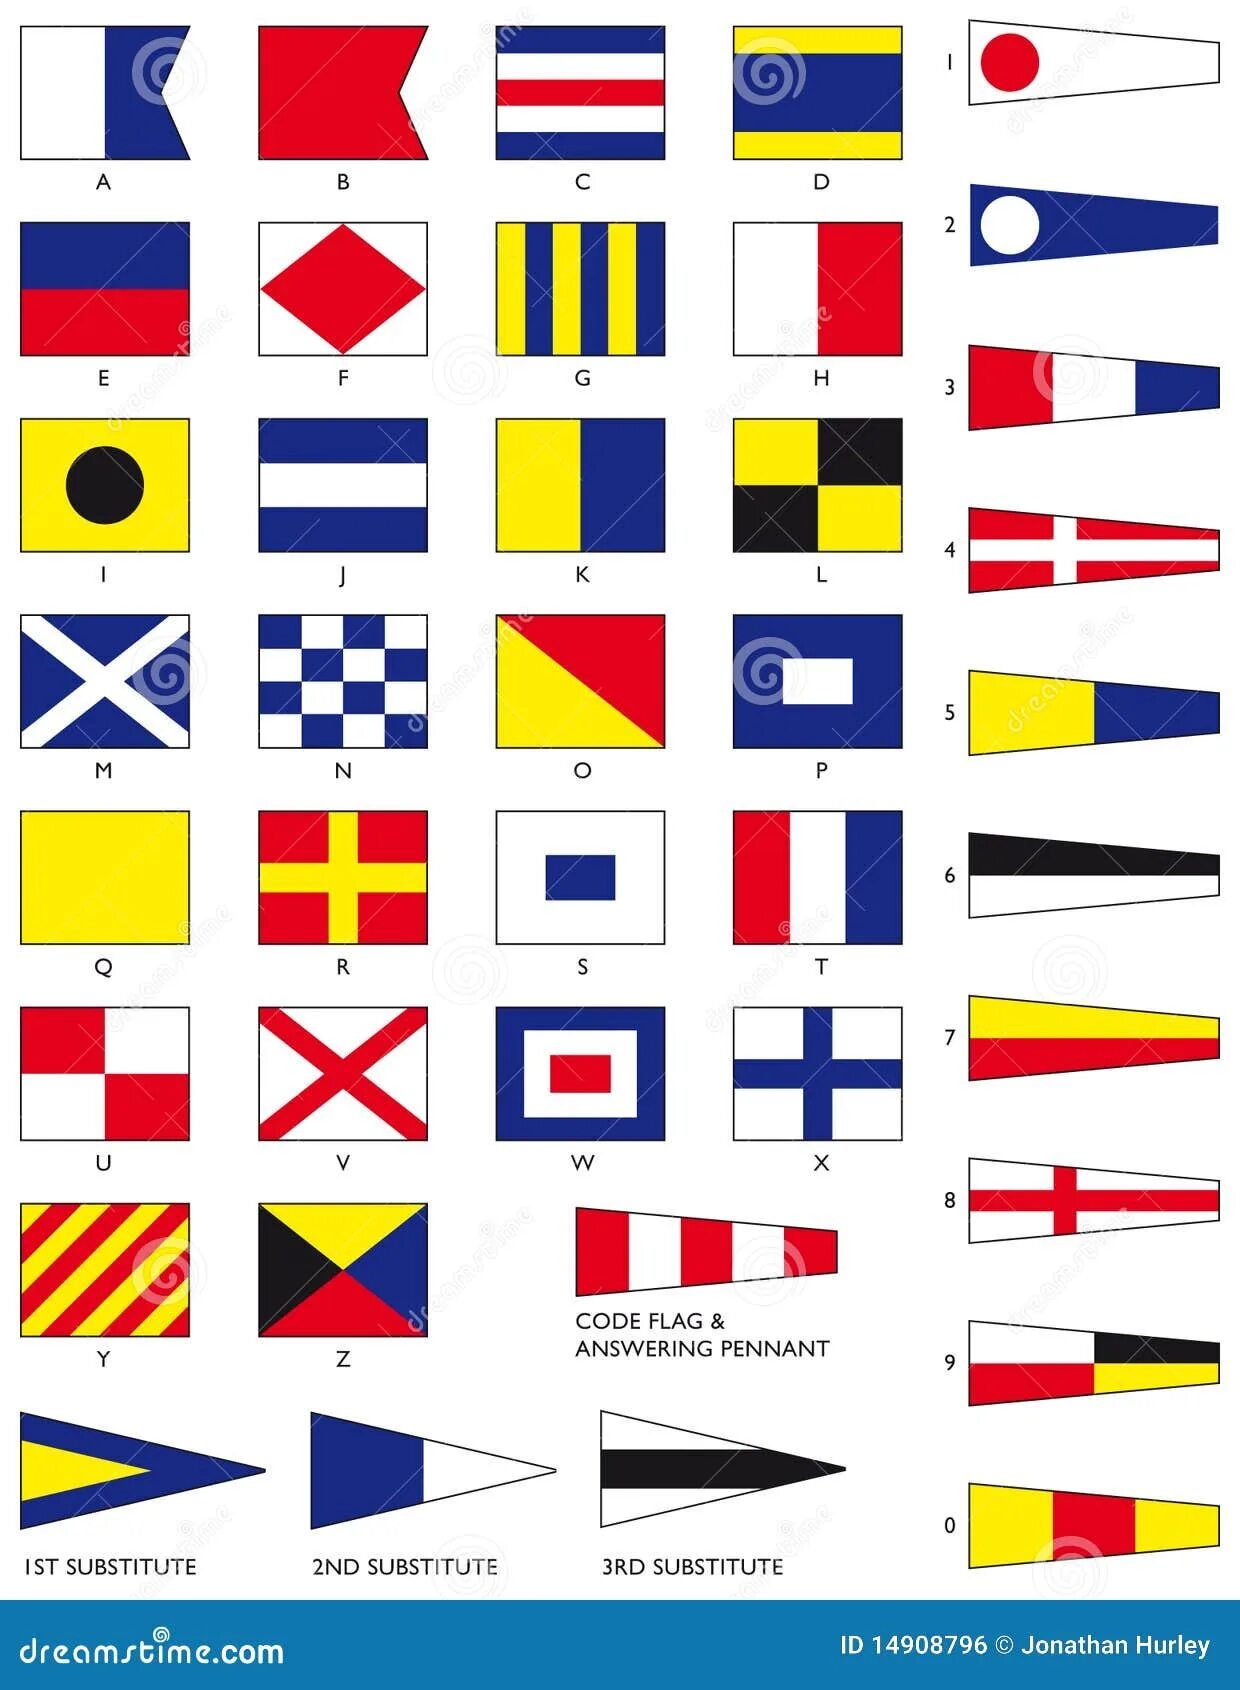 МСС-65 Международный свод сигналов. Флаги Альфа Браво Чарли. Сигнальные флаги. Морские флаги. Флаг международного свода